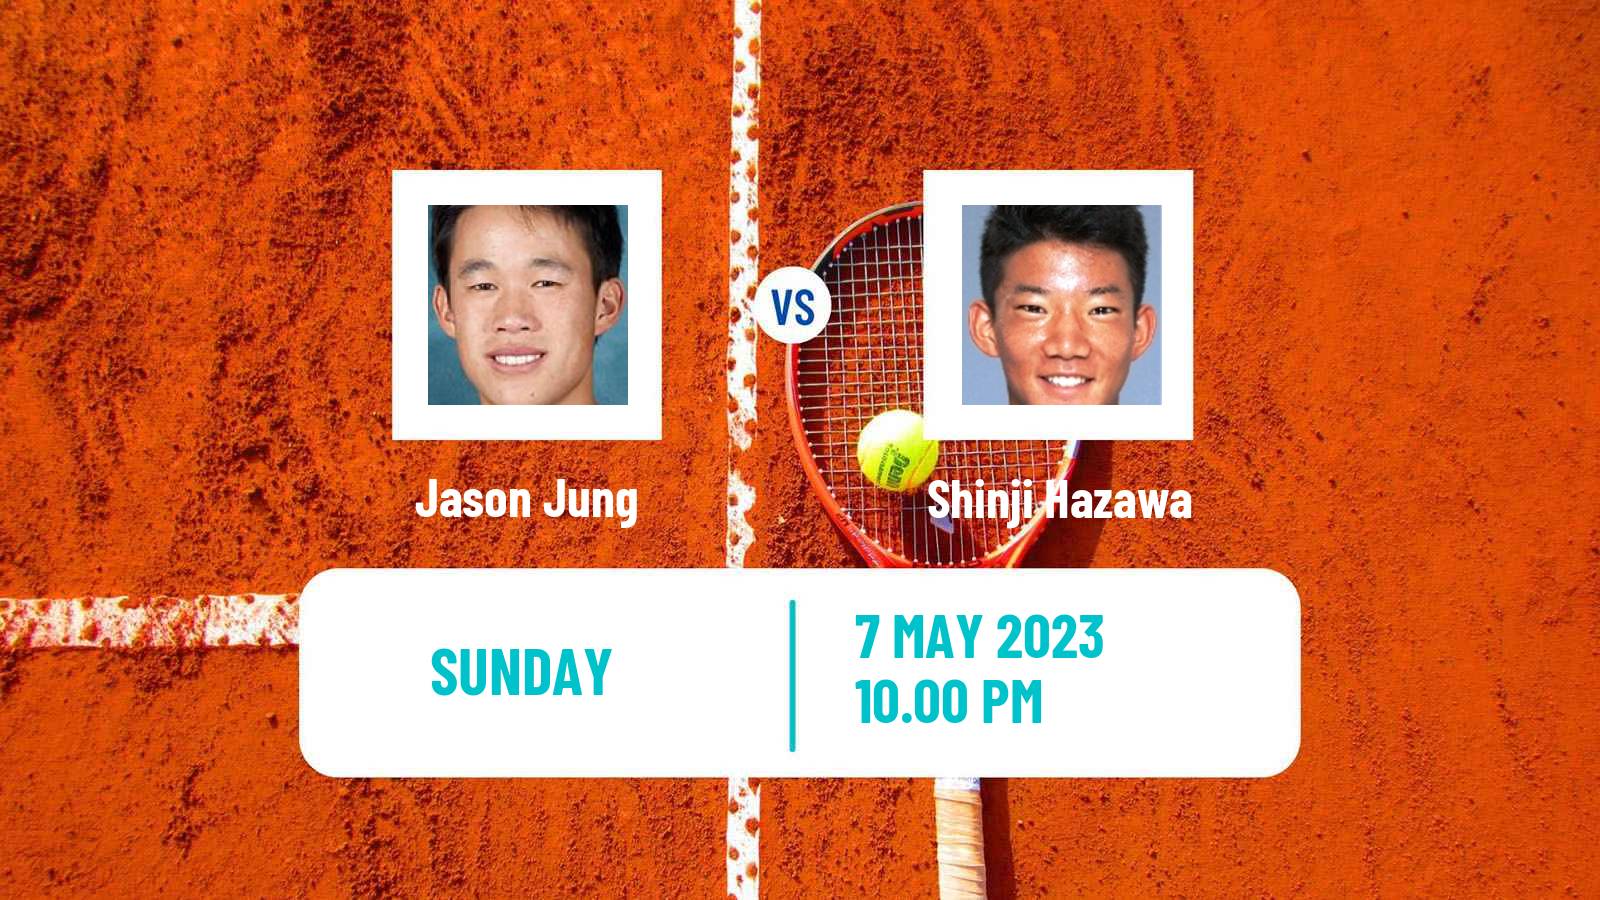 Tennis ATP Challenger Jason Jung - Shinji Hazawa